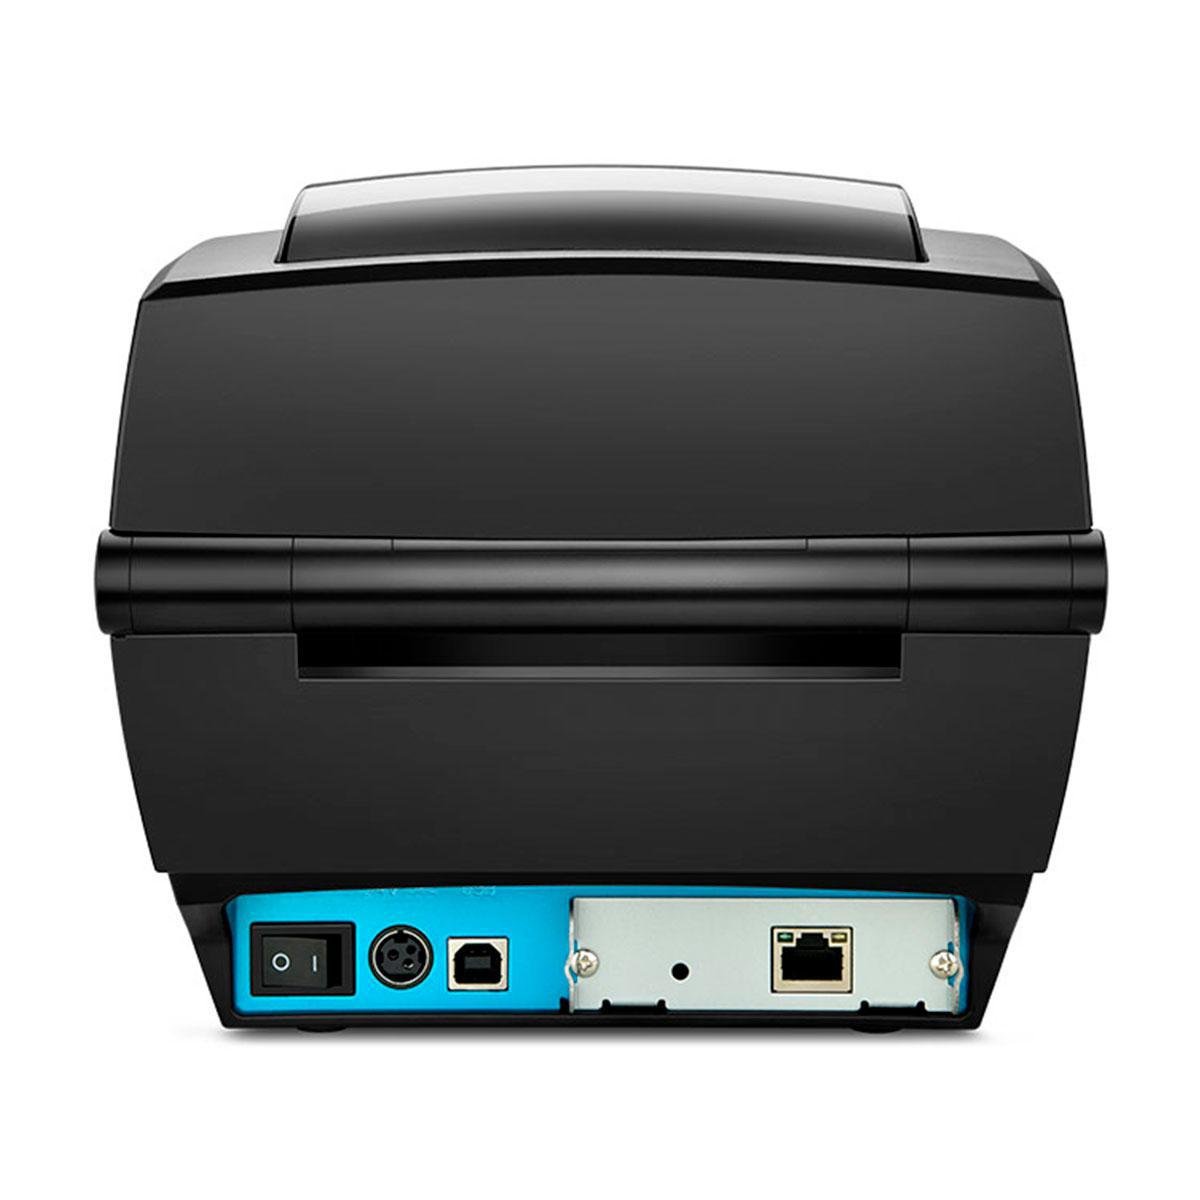 Impressora de Etiquetas Elgin L42 Pro, Usb/ethernet, 203dpi - 3